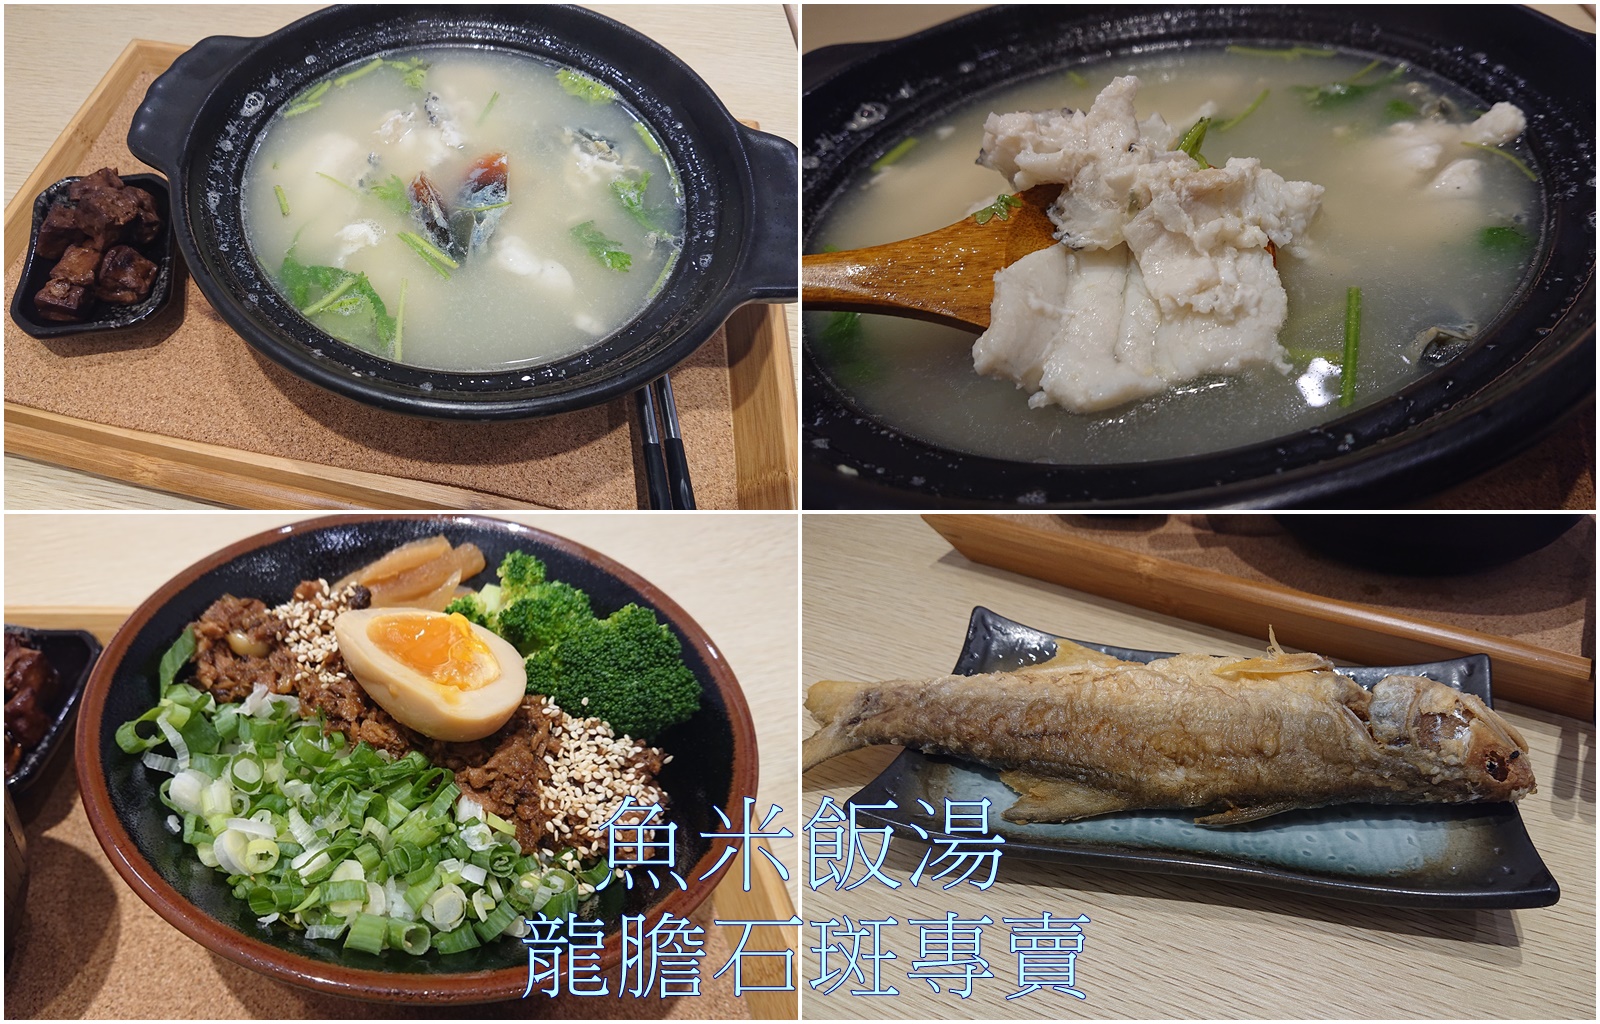 高雄美食。魚米飯湯，龍膽石斑專賣、飯湯料理、鮪魚燥飯 x 鄰近左營高鐵